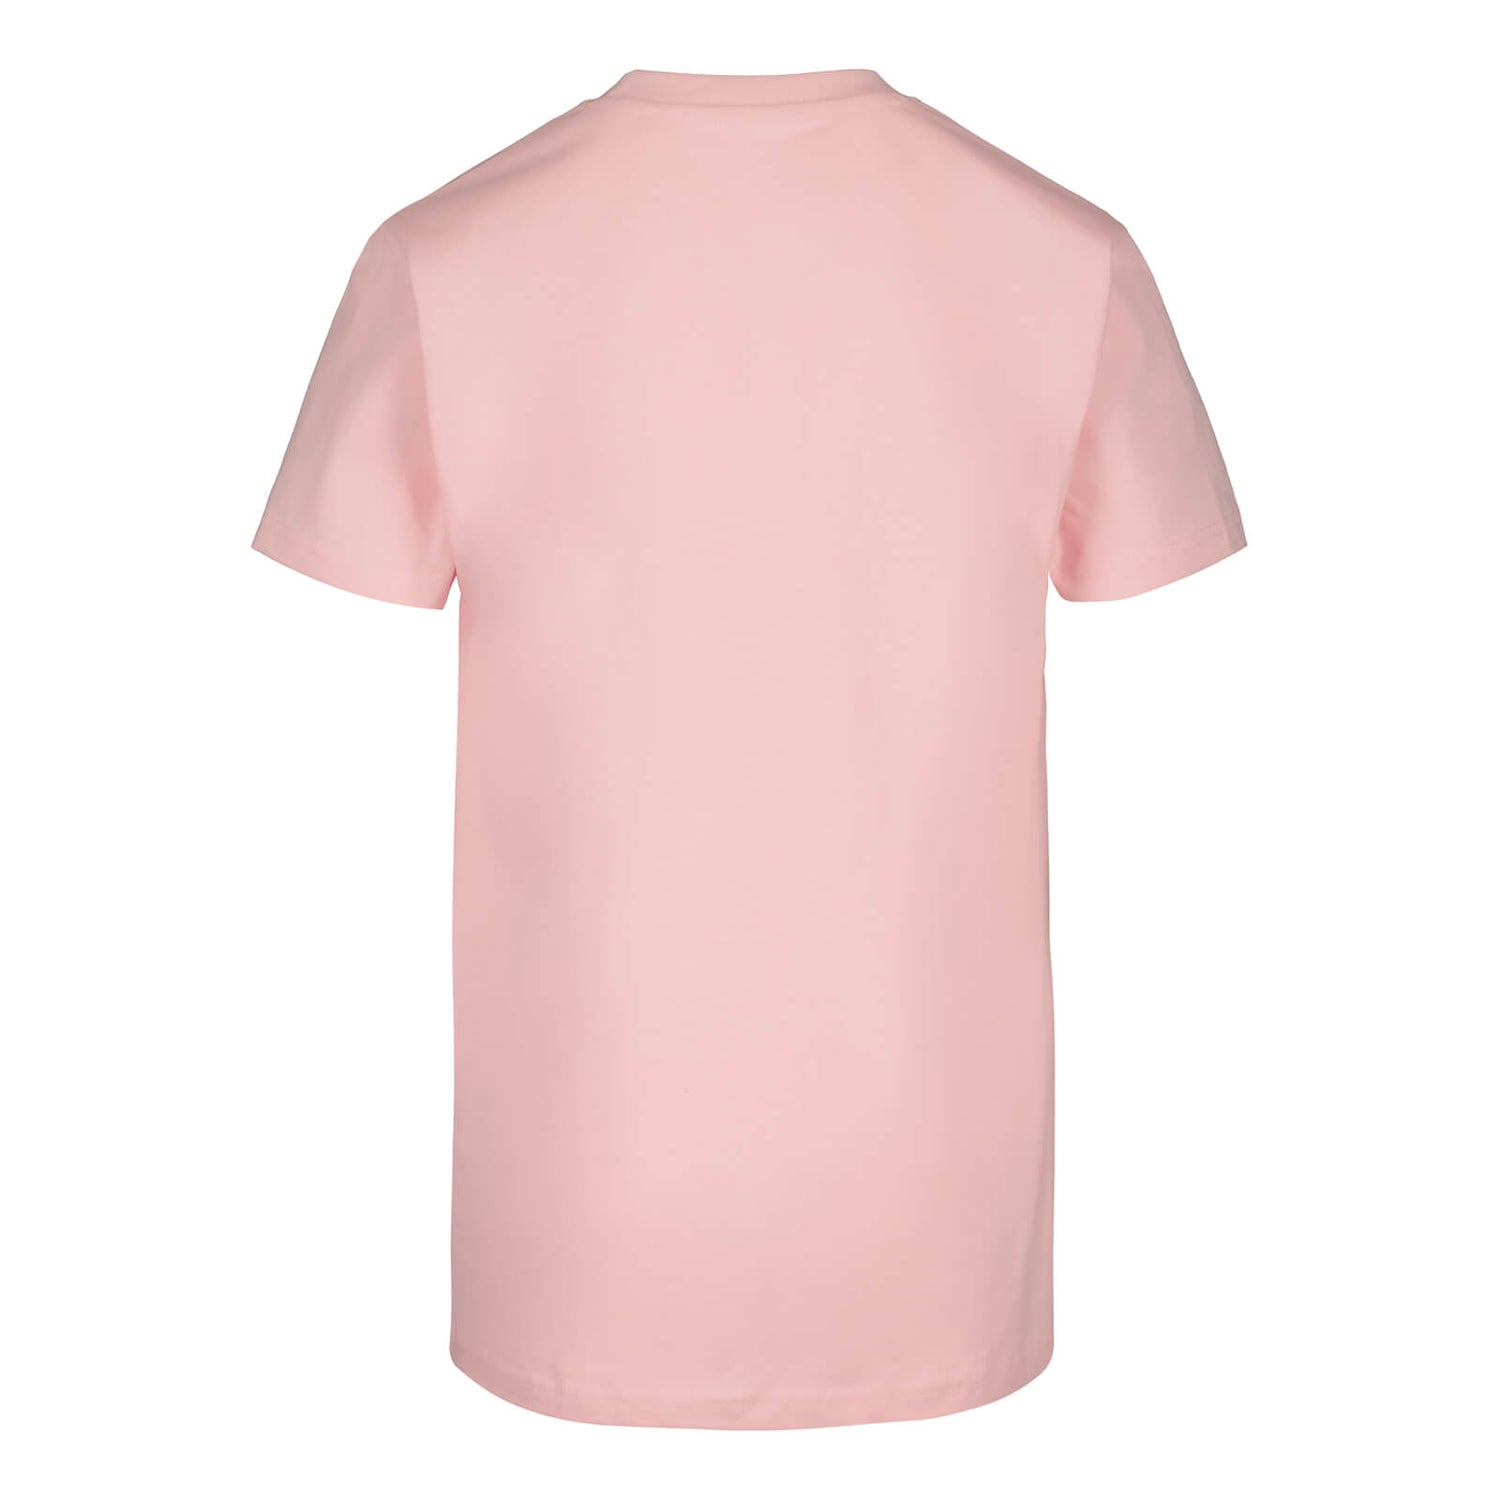 HUU Luke t-shirt, Pink, Children